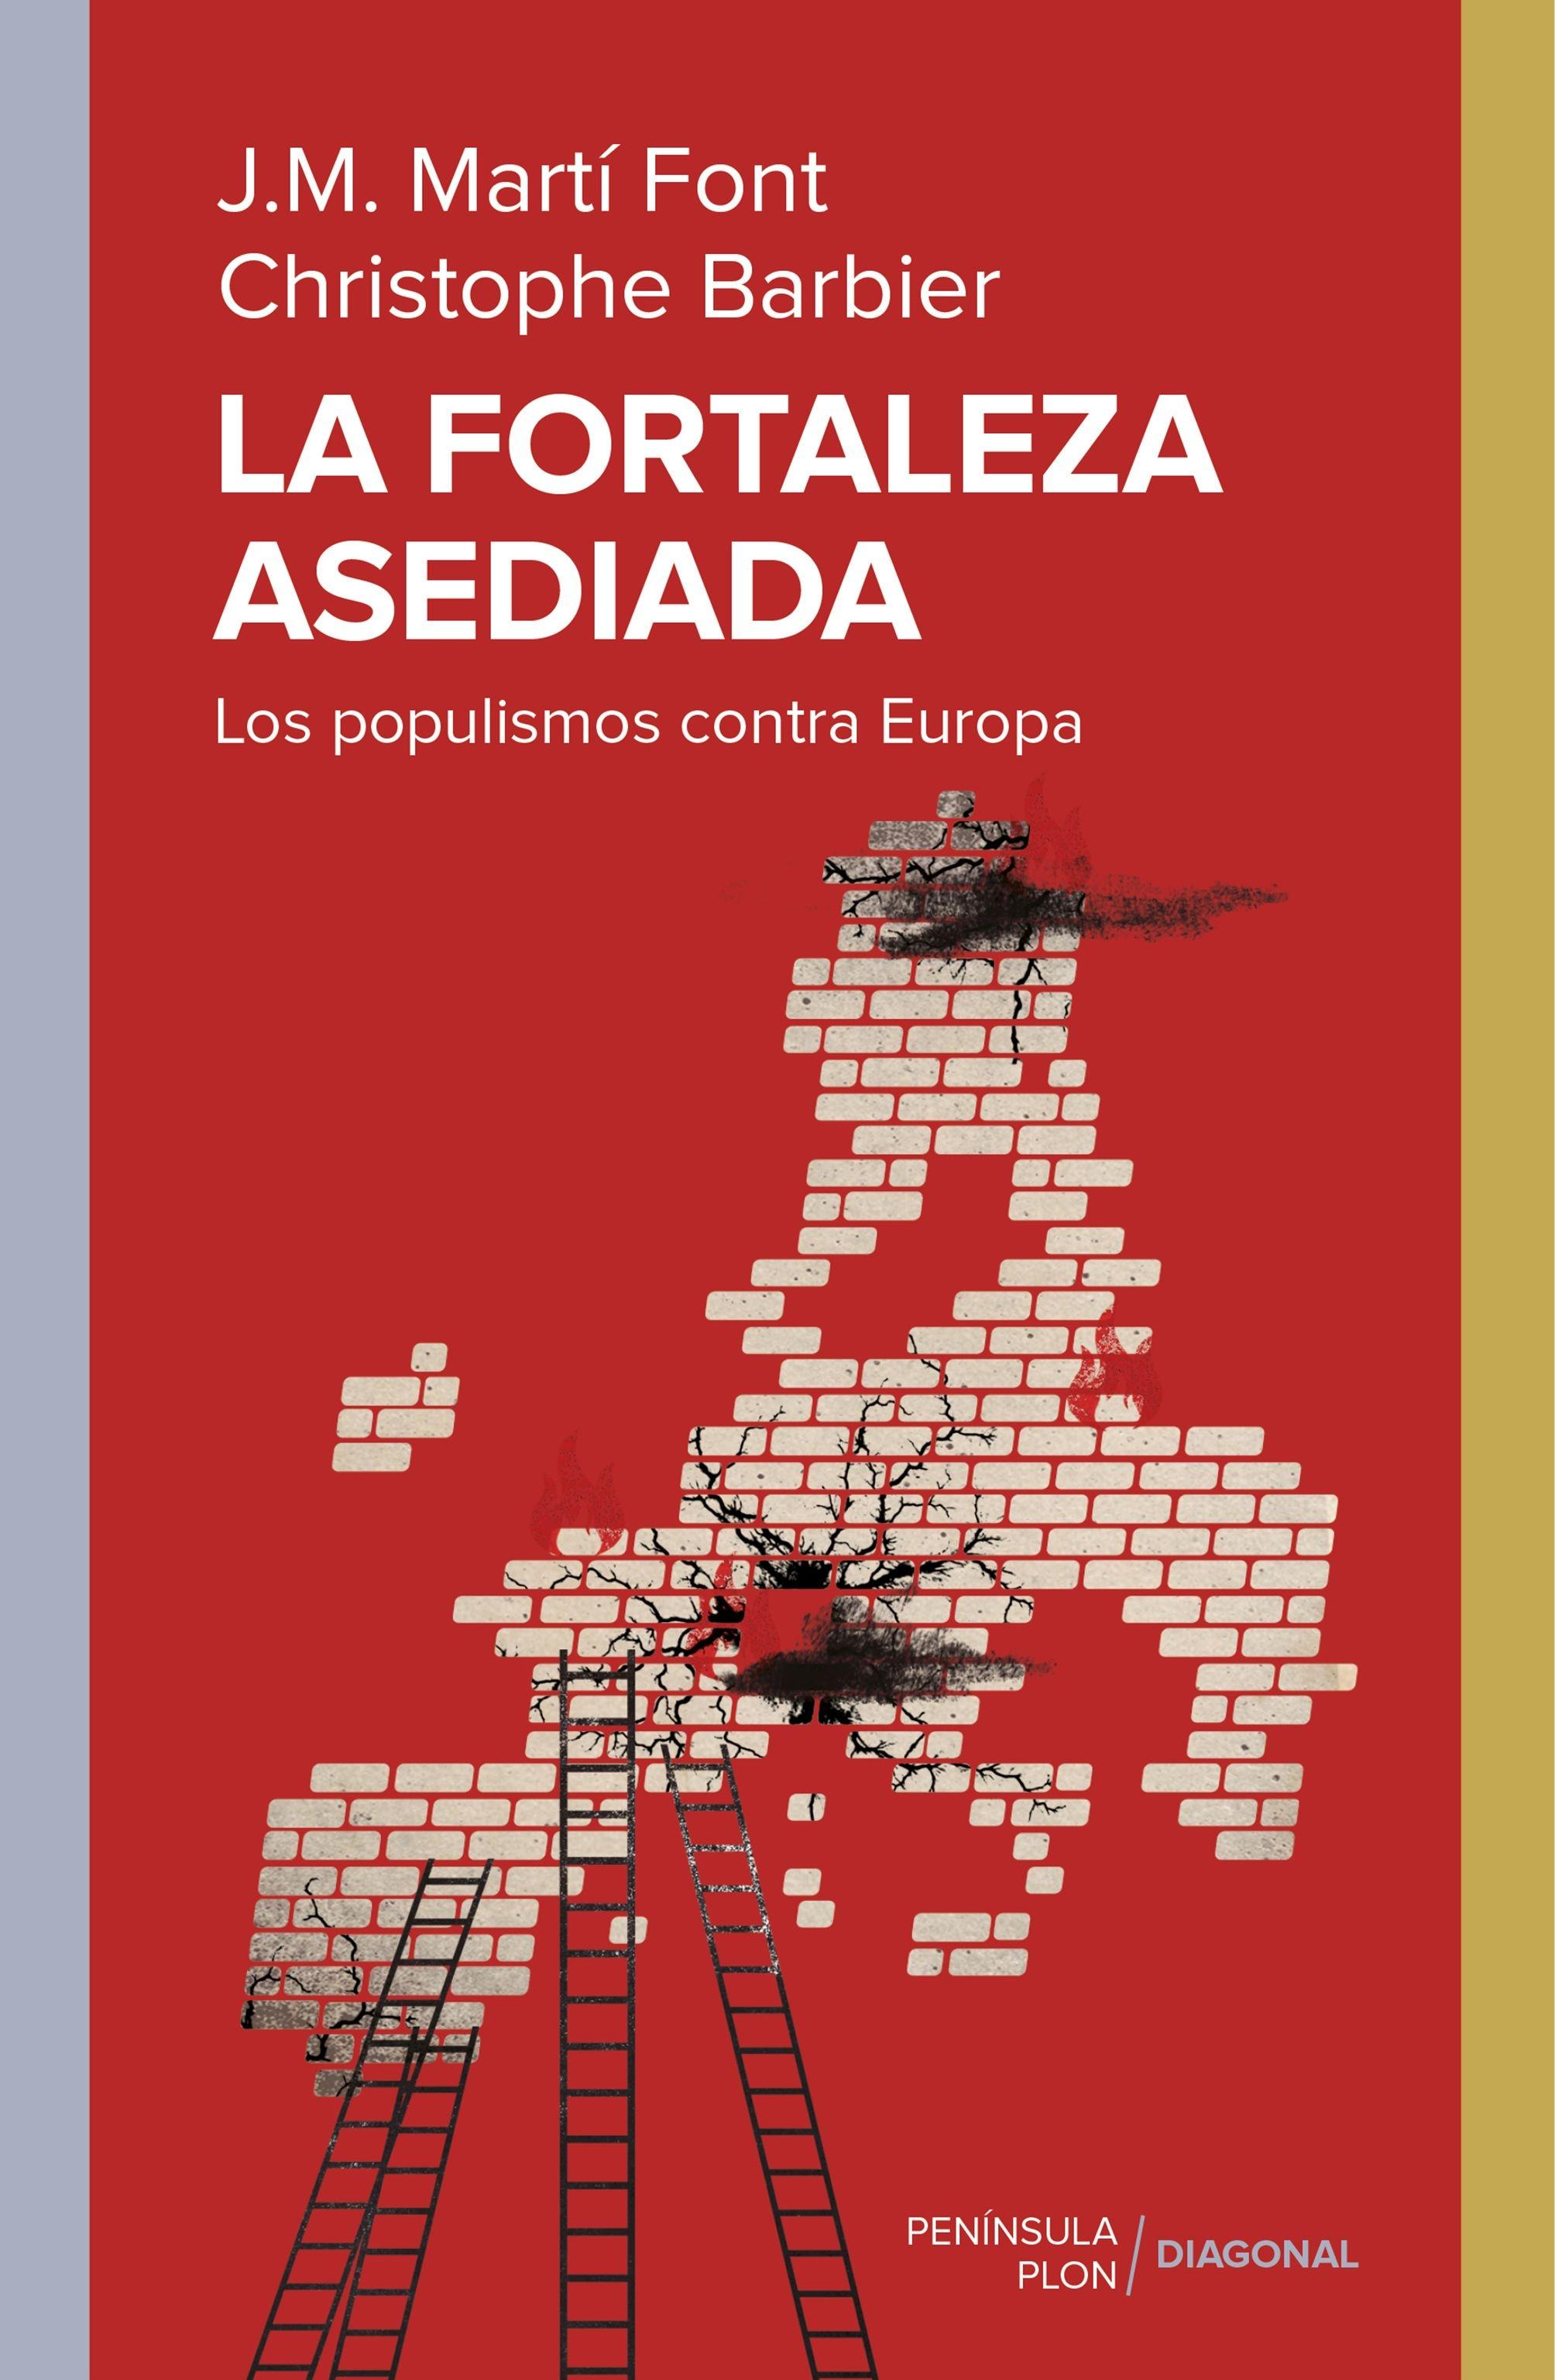 La Fortaleza Asediada "Los Populismos contra Europa". 